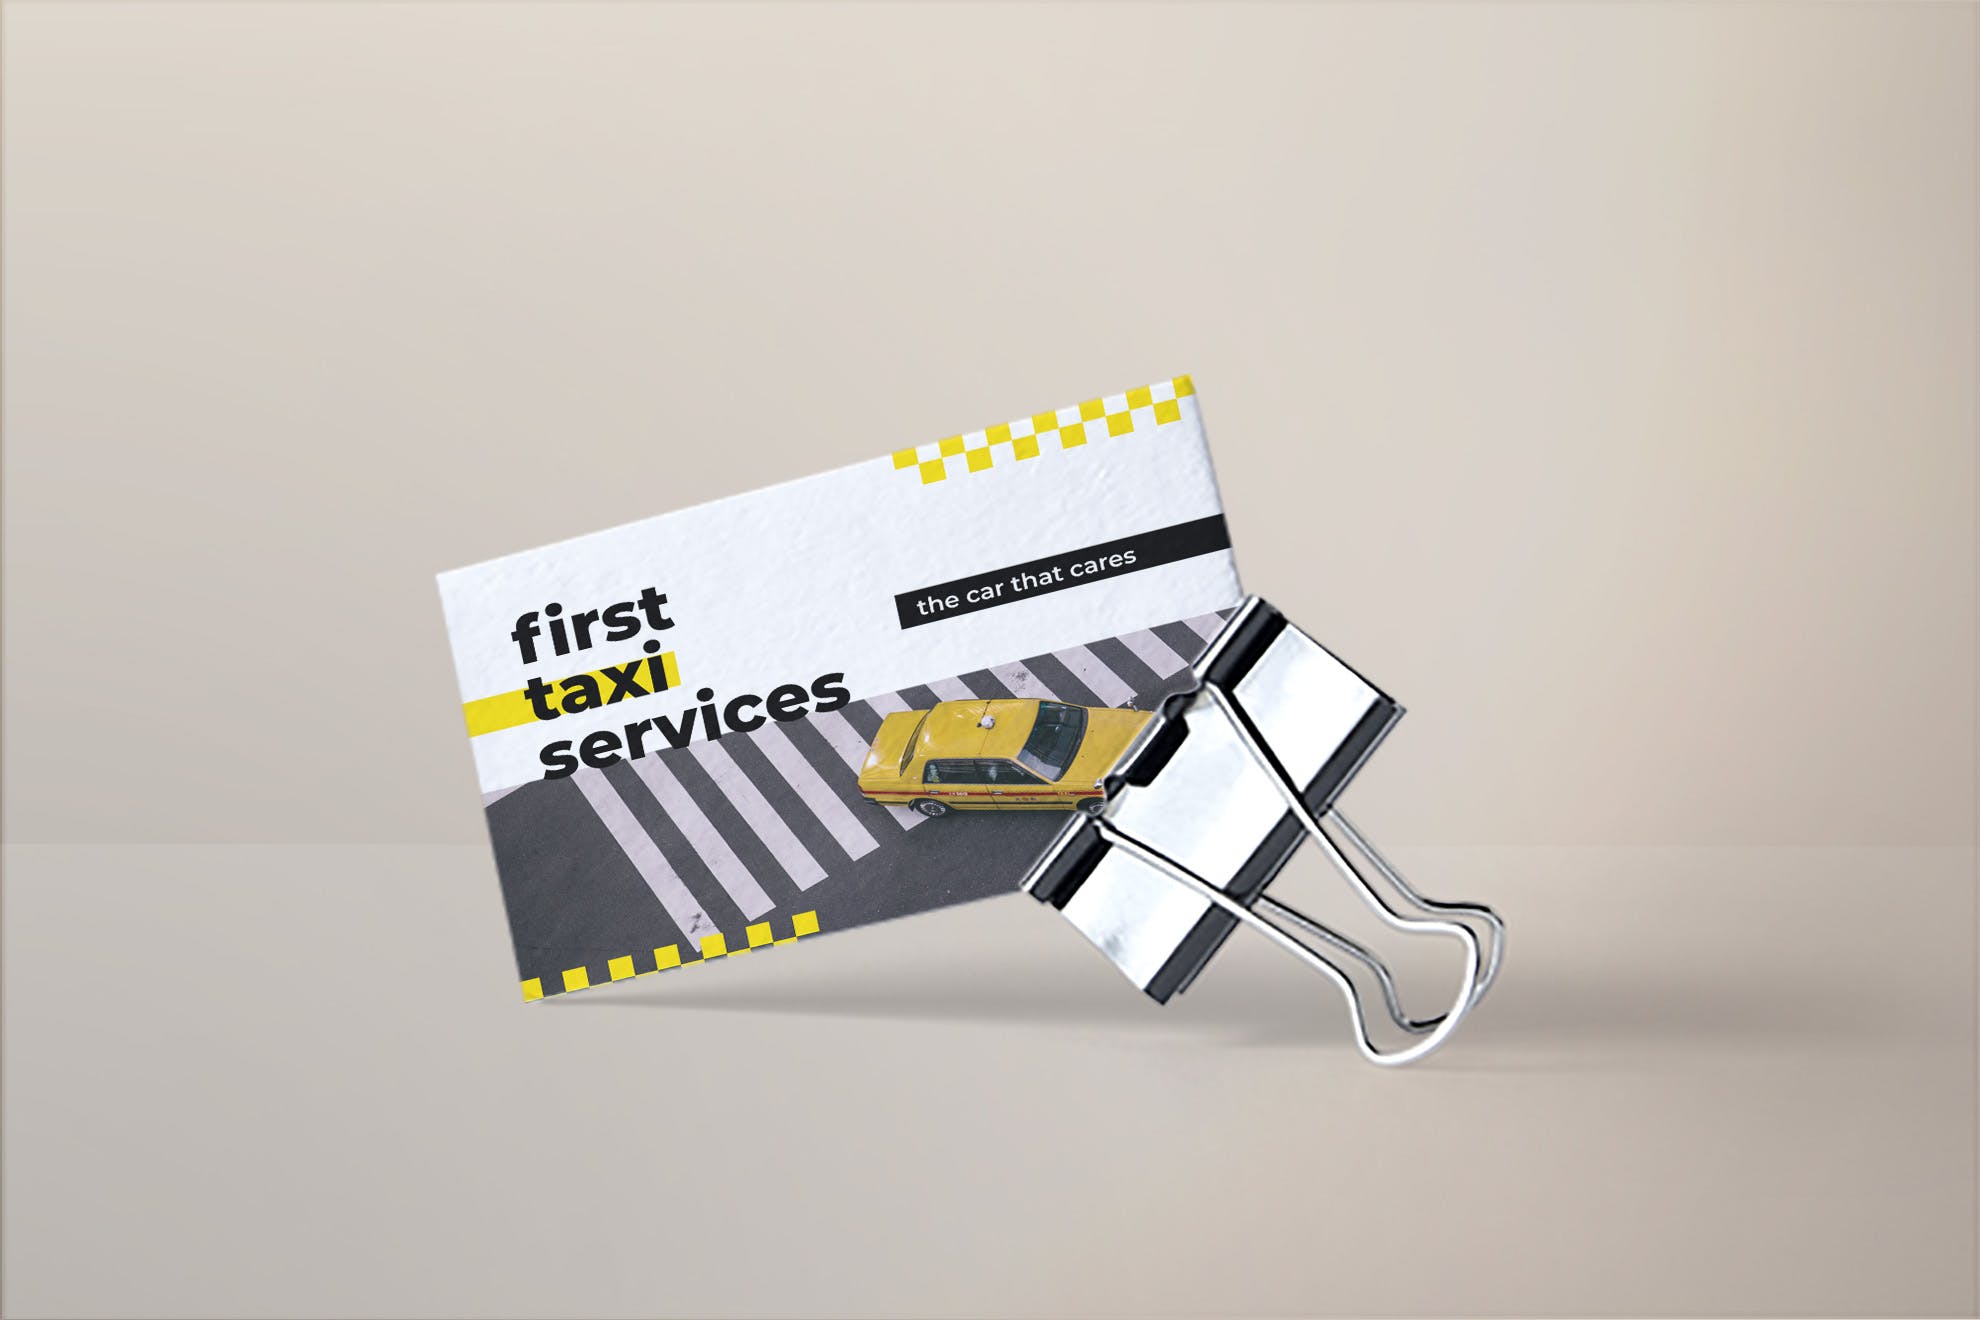 出租车/网约车服务企业司机名片设计模板 Taxi Services Business Card插图(1)